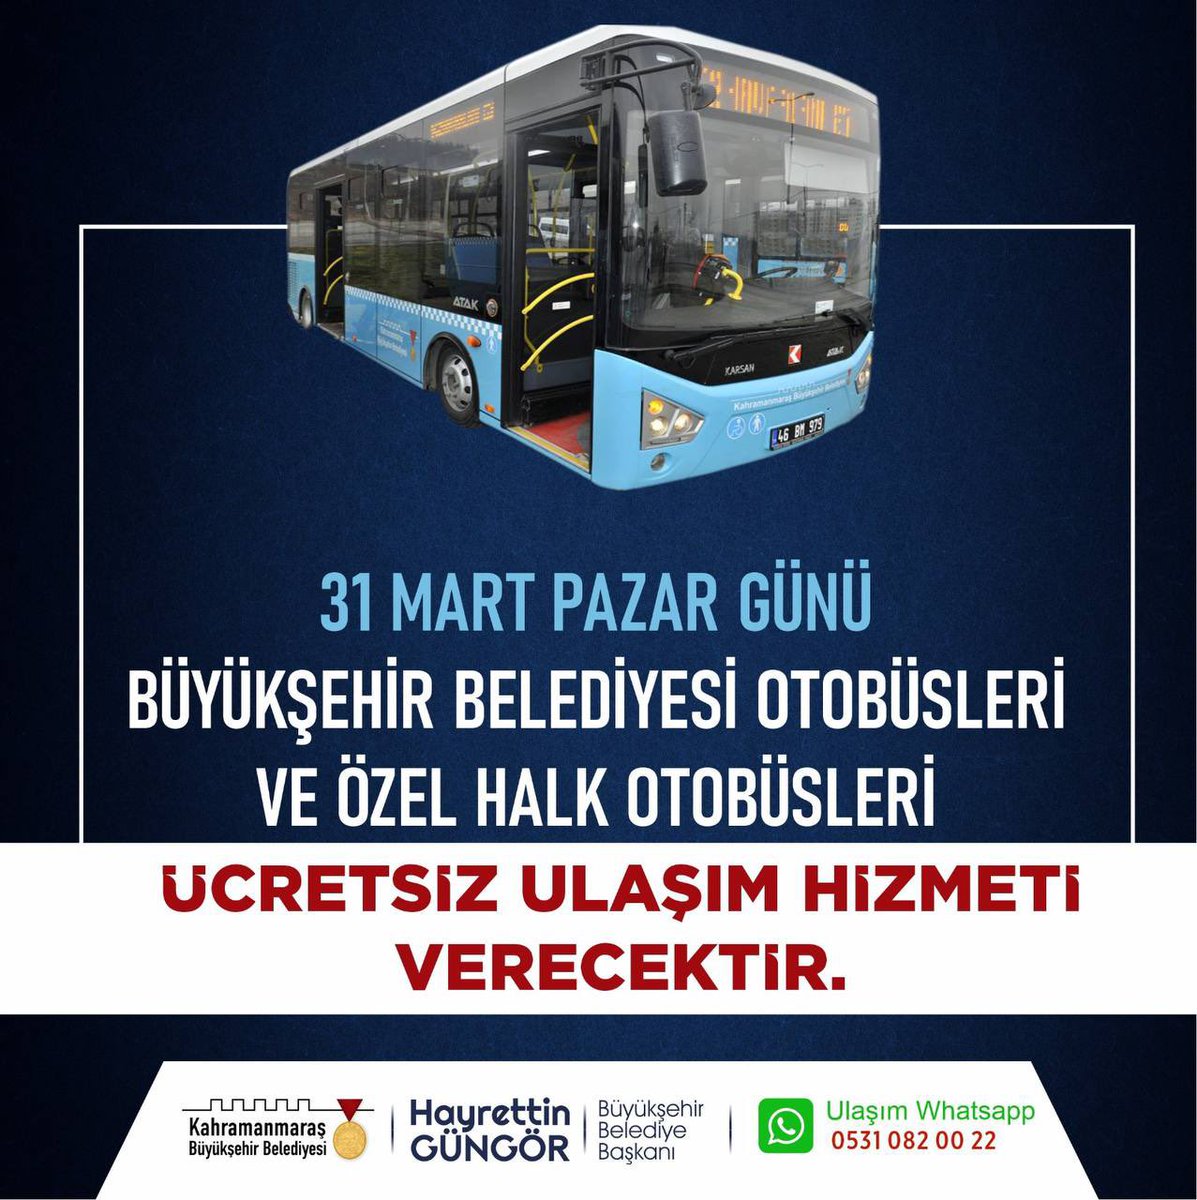 31 Mart Pazar Günü Büyükşehir Belediyesi Otobüsleri ve Özel Halk Otobüsleri Ücretsiz Ulaşım Hizmeti Verecektir.